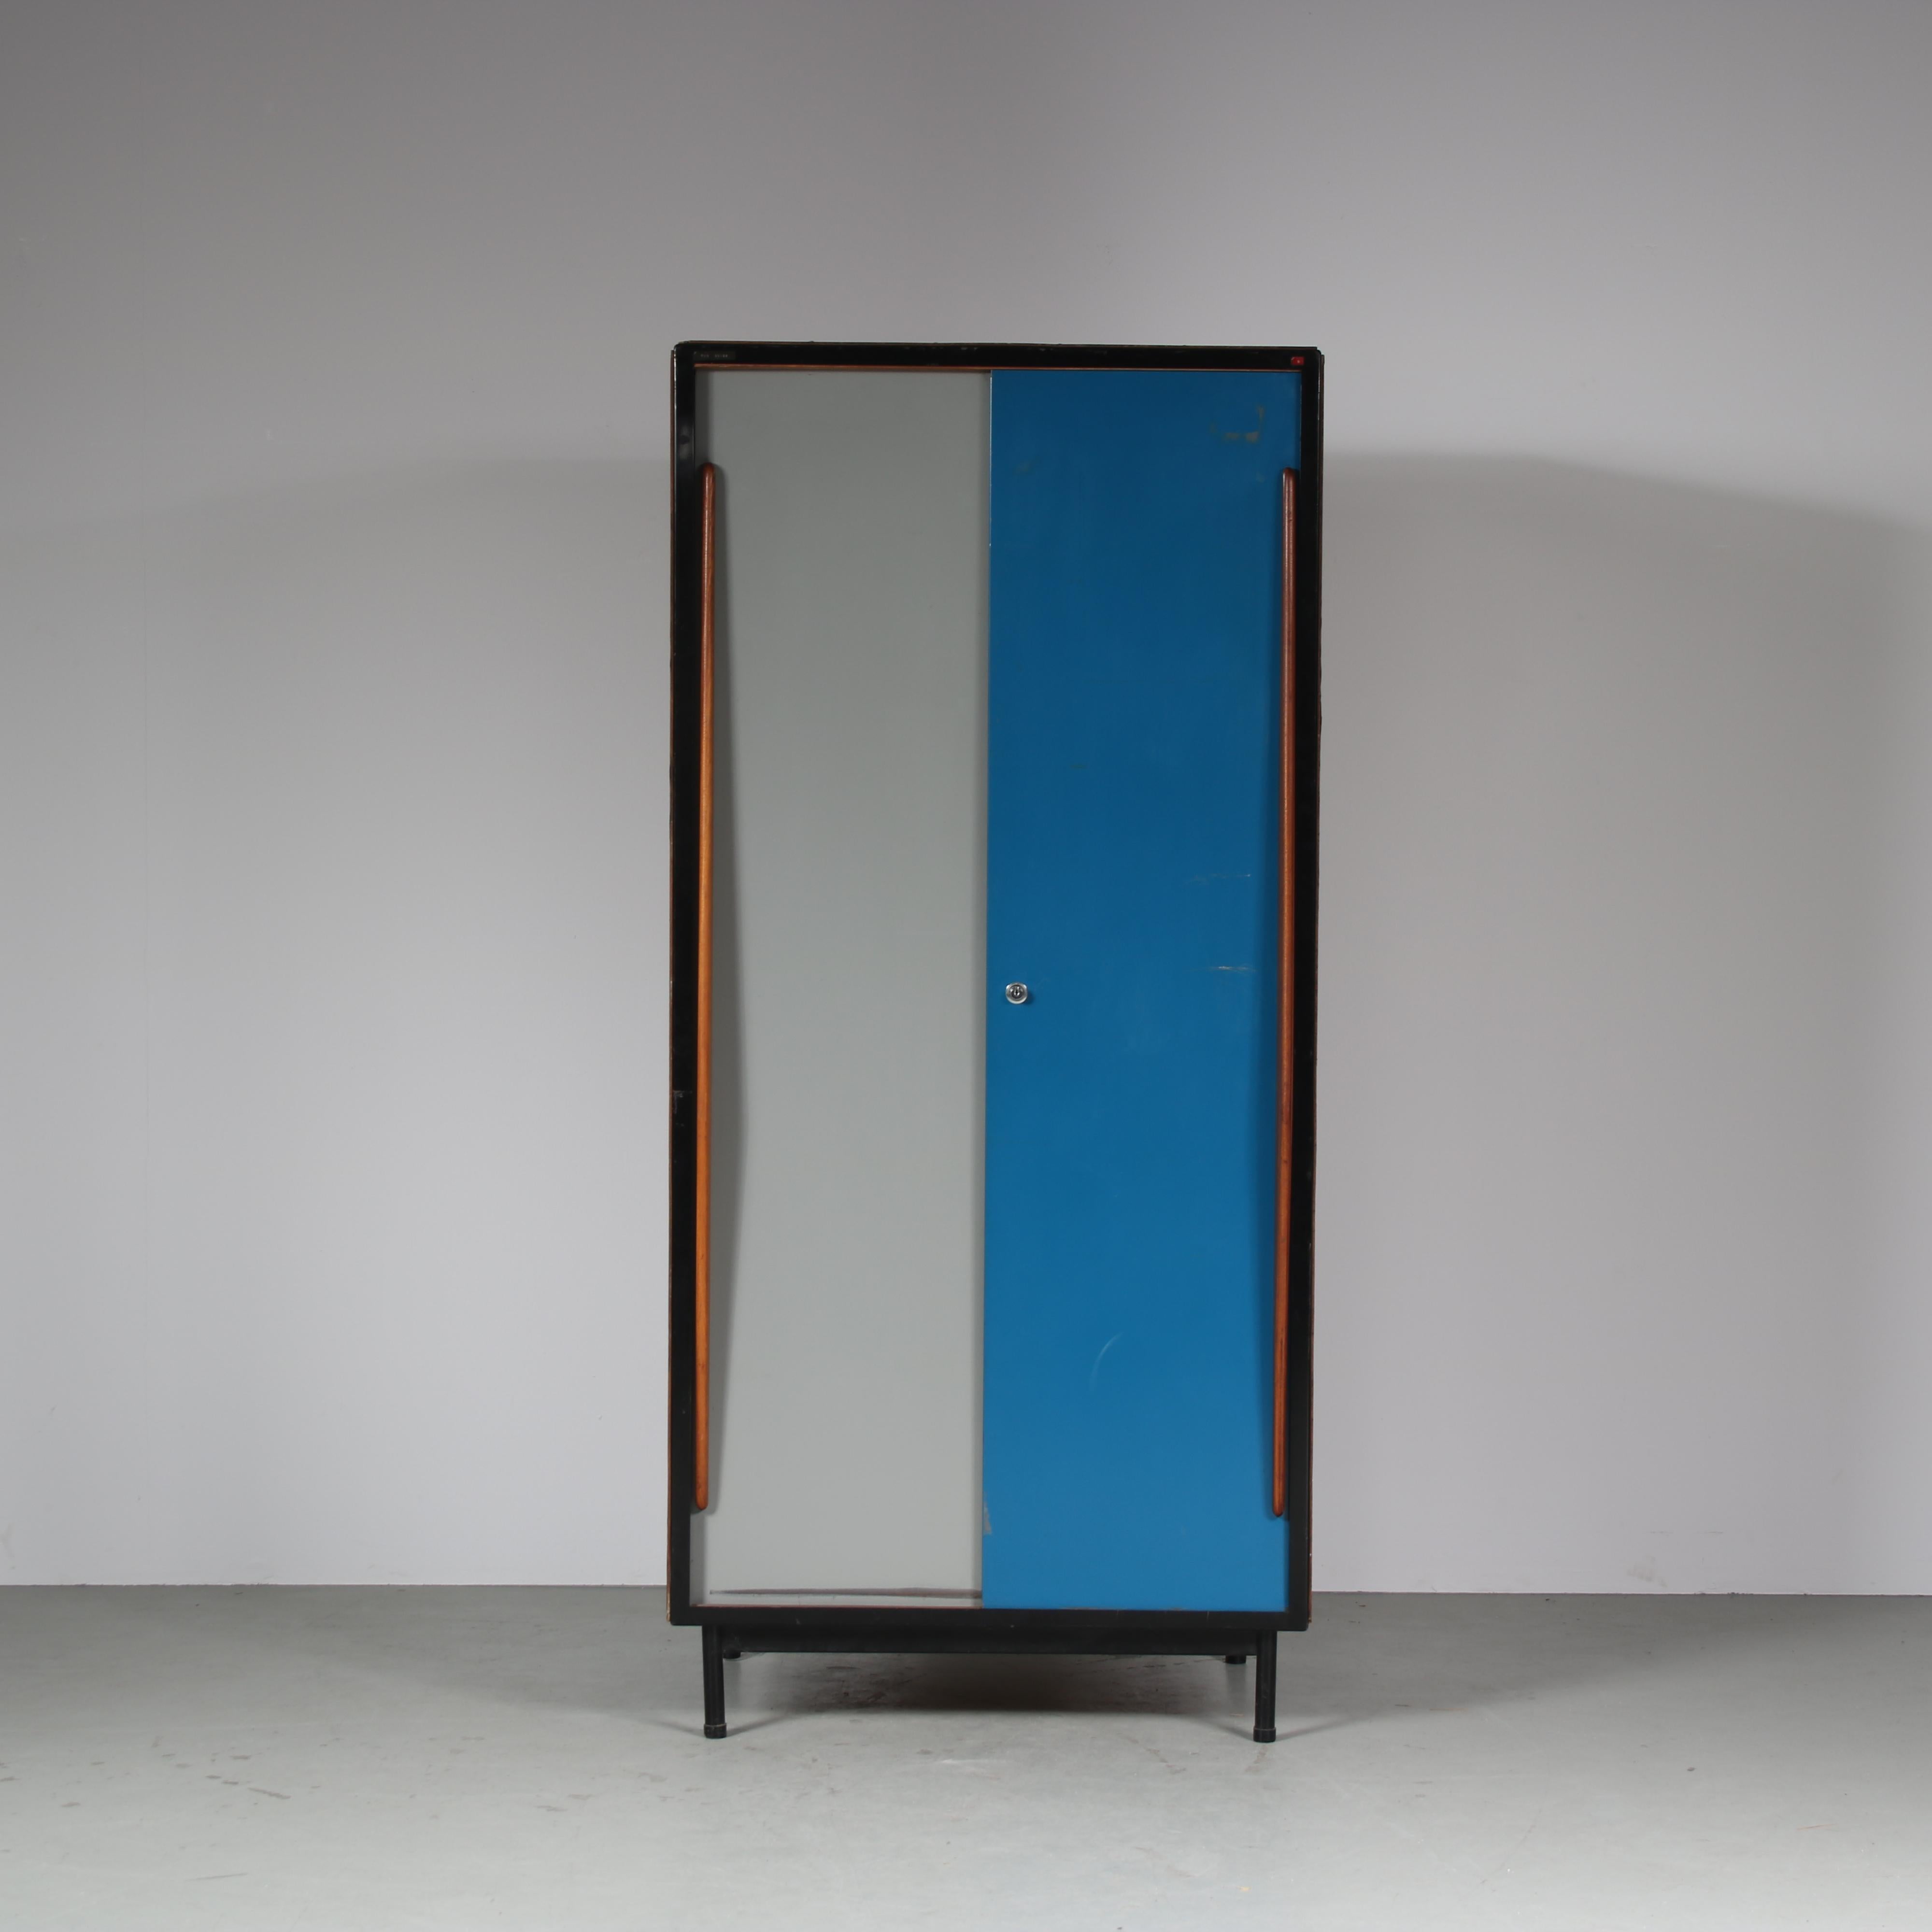 Une armoire fantastique conçue par Willy Van Der Meeren, fabriquée par Tubax en Belgique en 1952.

Cette pièce rare et attrayante est fabriquée en bois de belle qualité sur une structure métallique noire. Les grandes portes coulissantes en métal